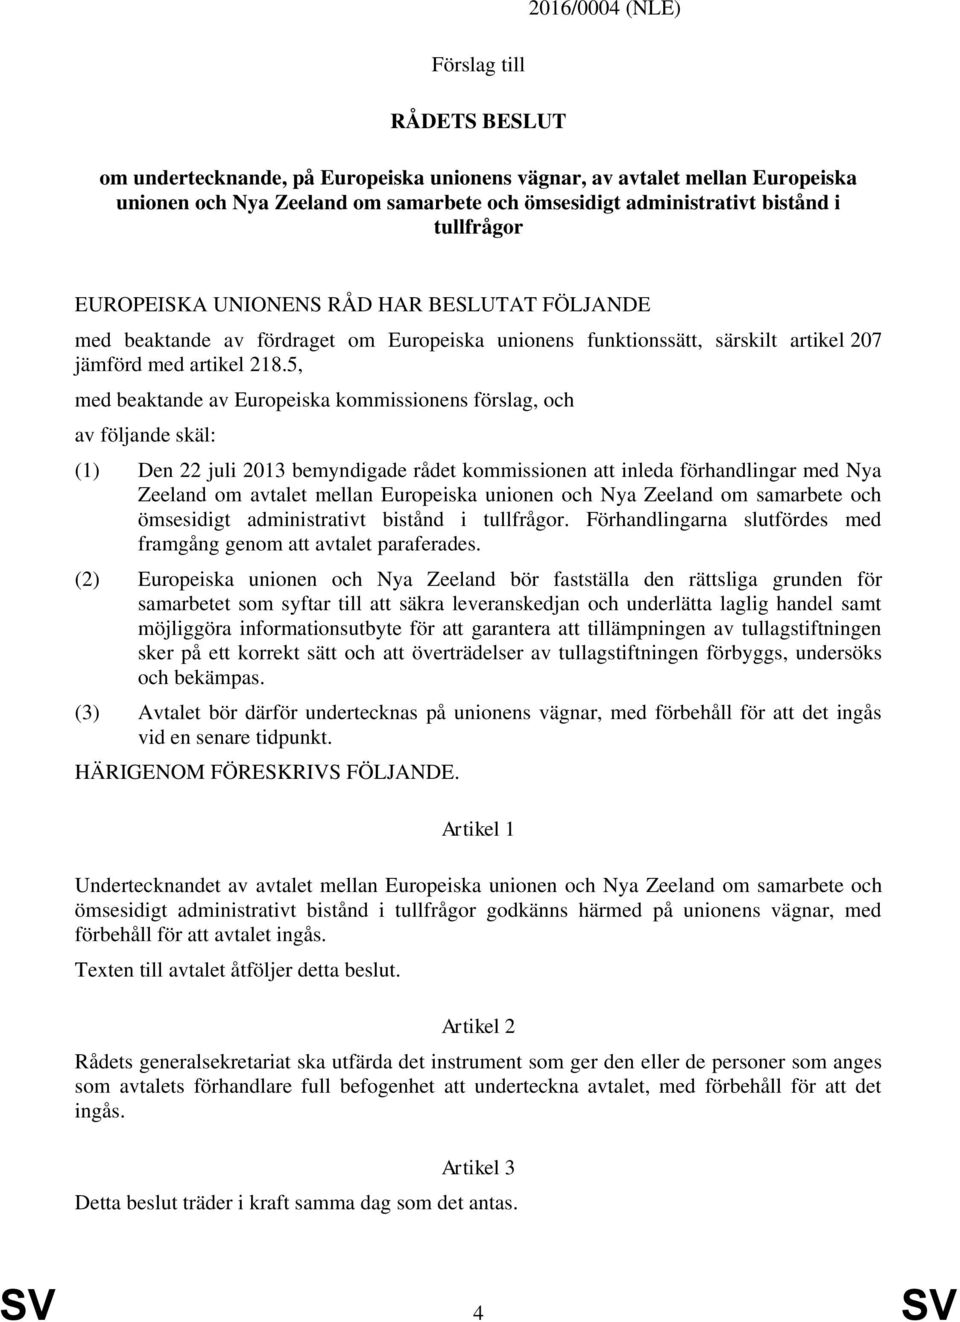 5, med beaktande av Europeiska kommissionens förslag, och av följande skäl: (1) Den 22 juli 2013 bemyndigade rådet kommissionen att inleda förhandlingar med Nya Zeeland om avtalet mellan Europeiska